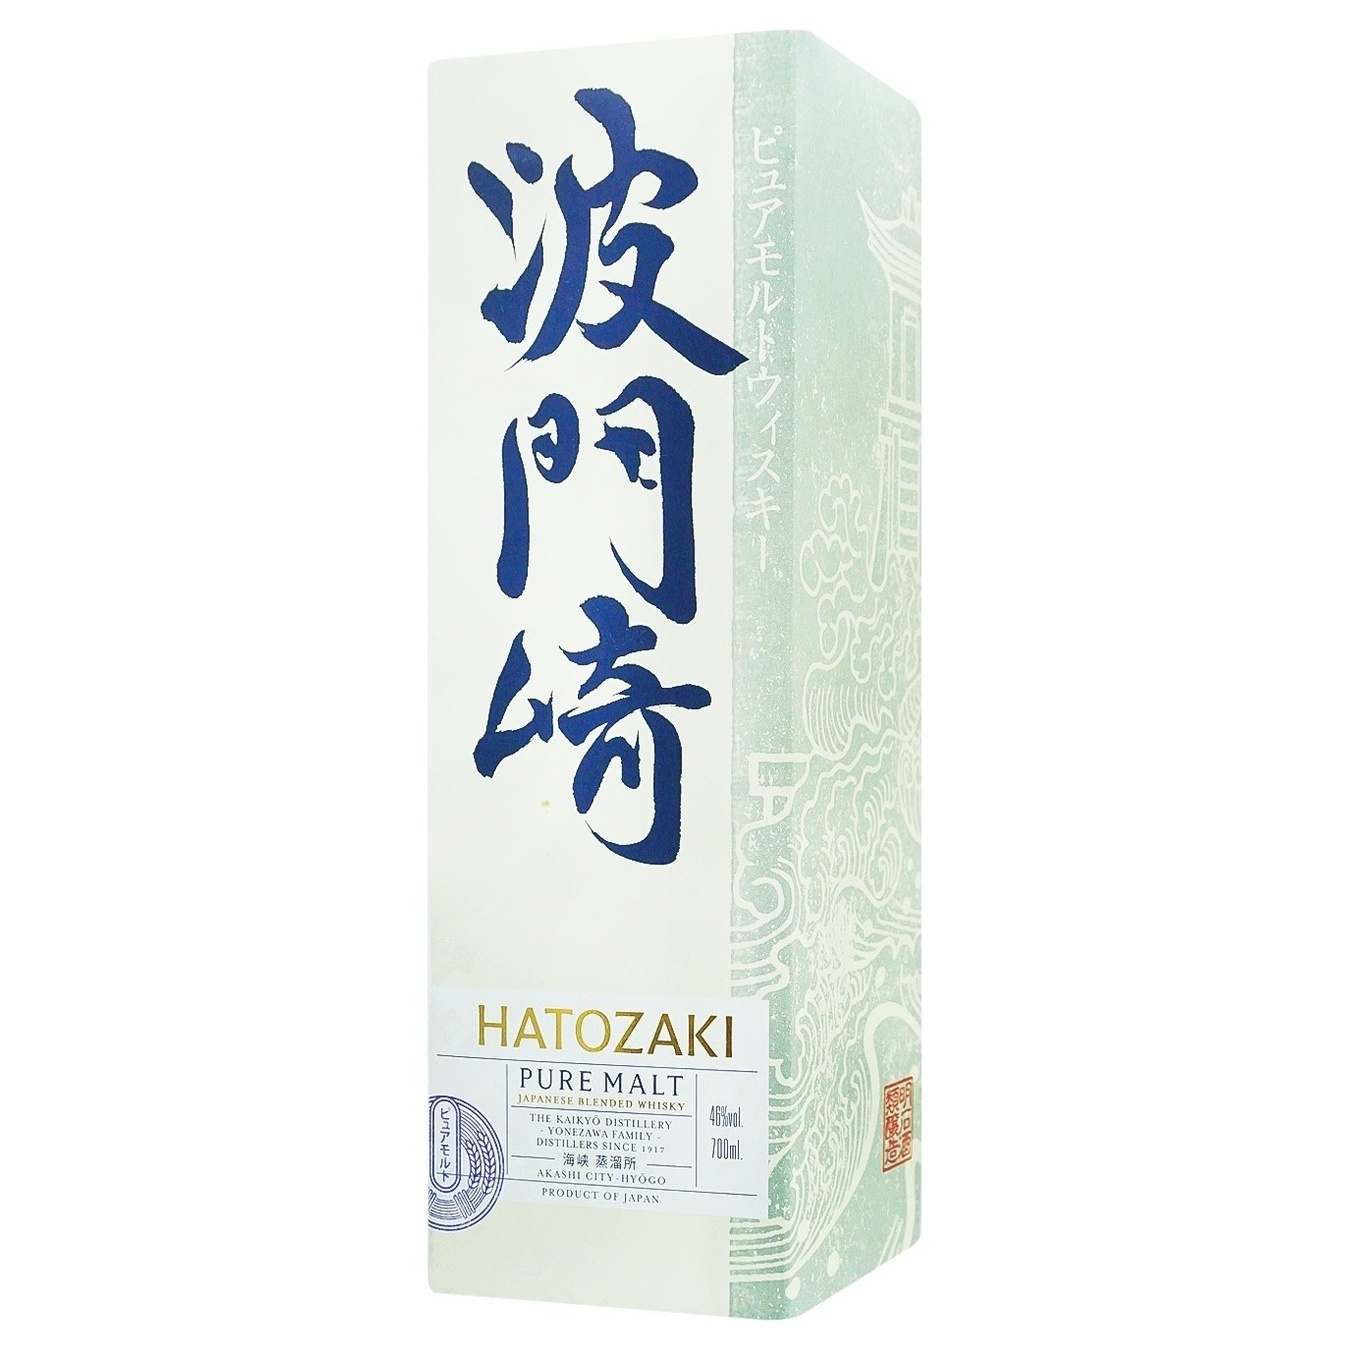 Hatozaki Pure Malt Japanese whiskey 46% 0.7 l